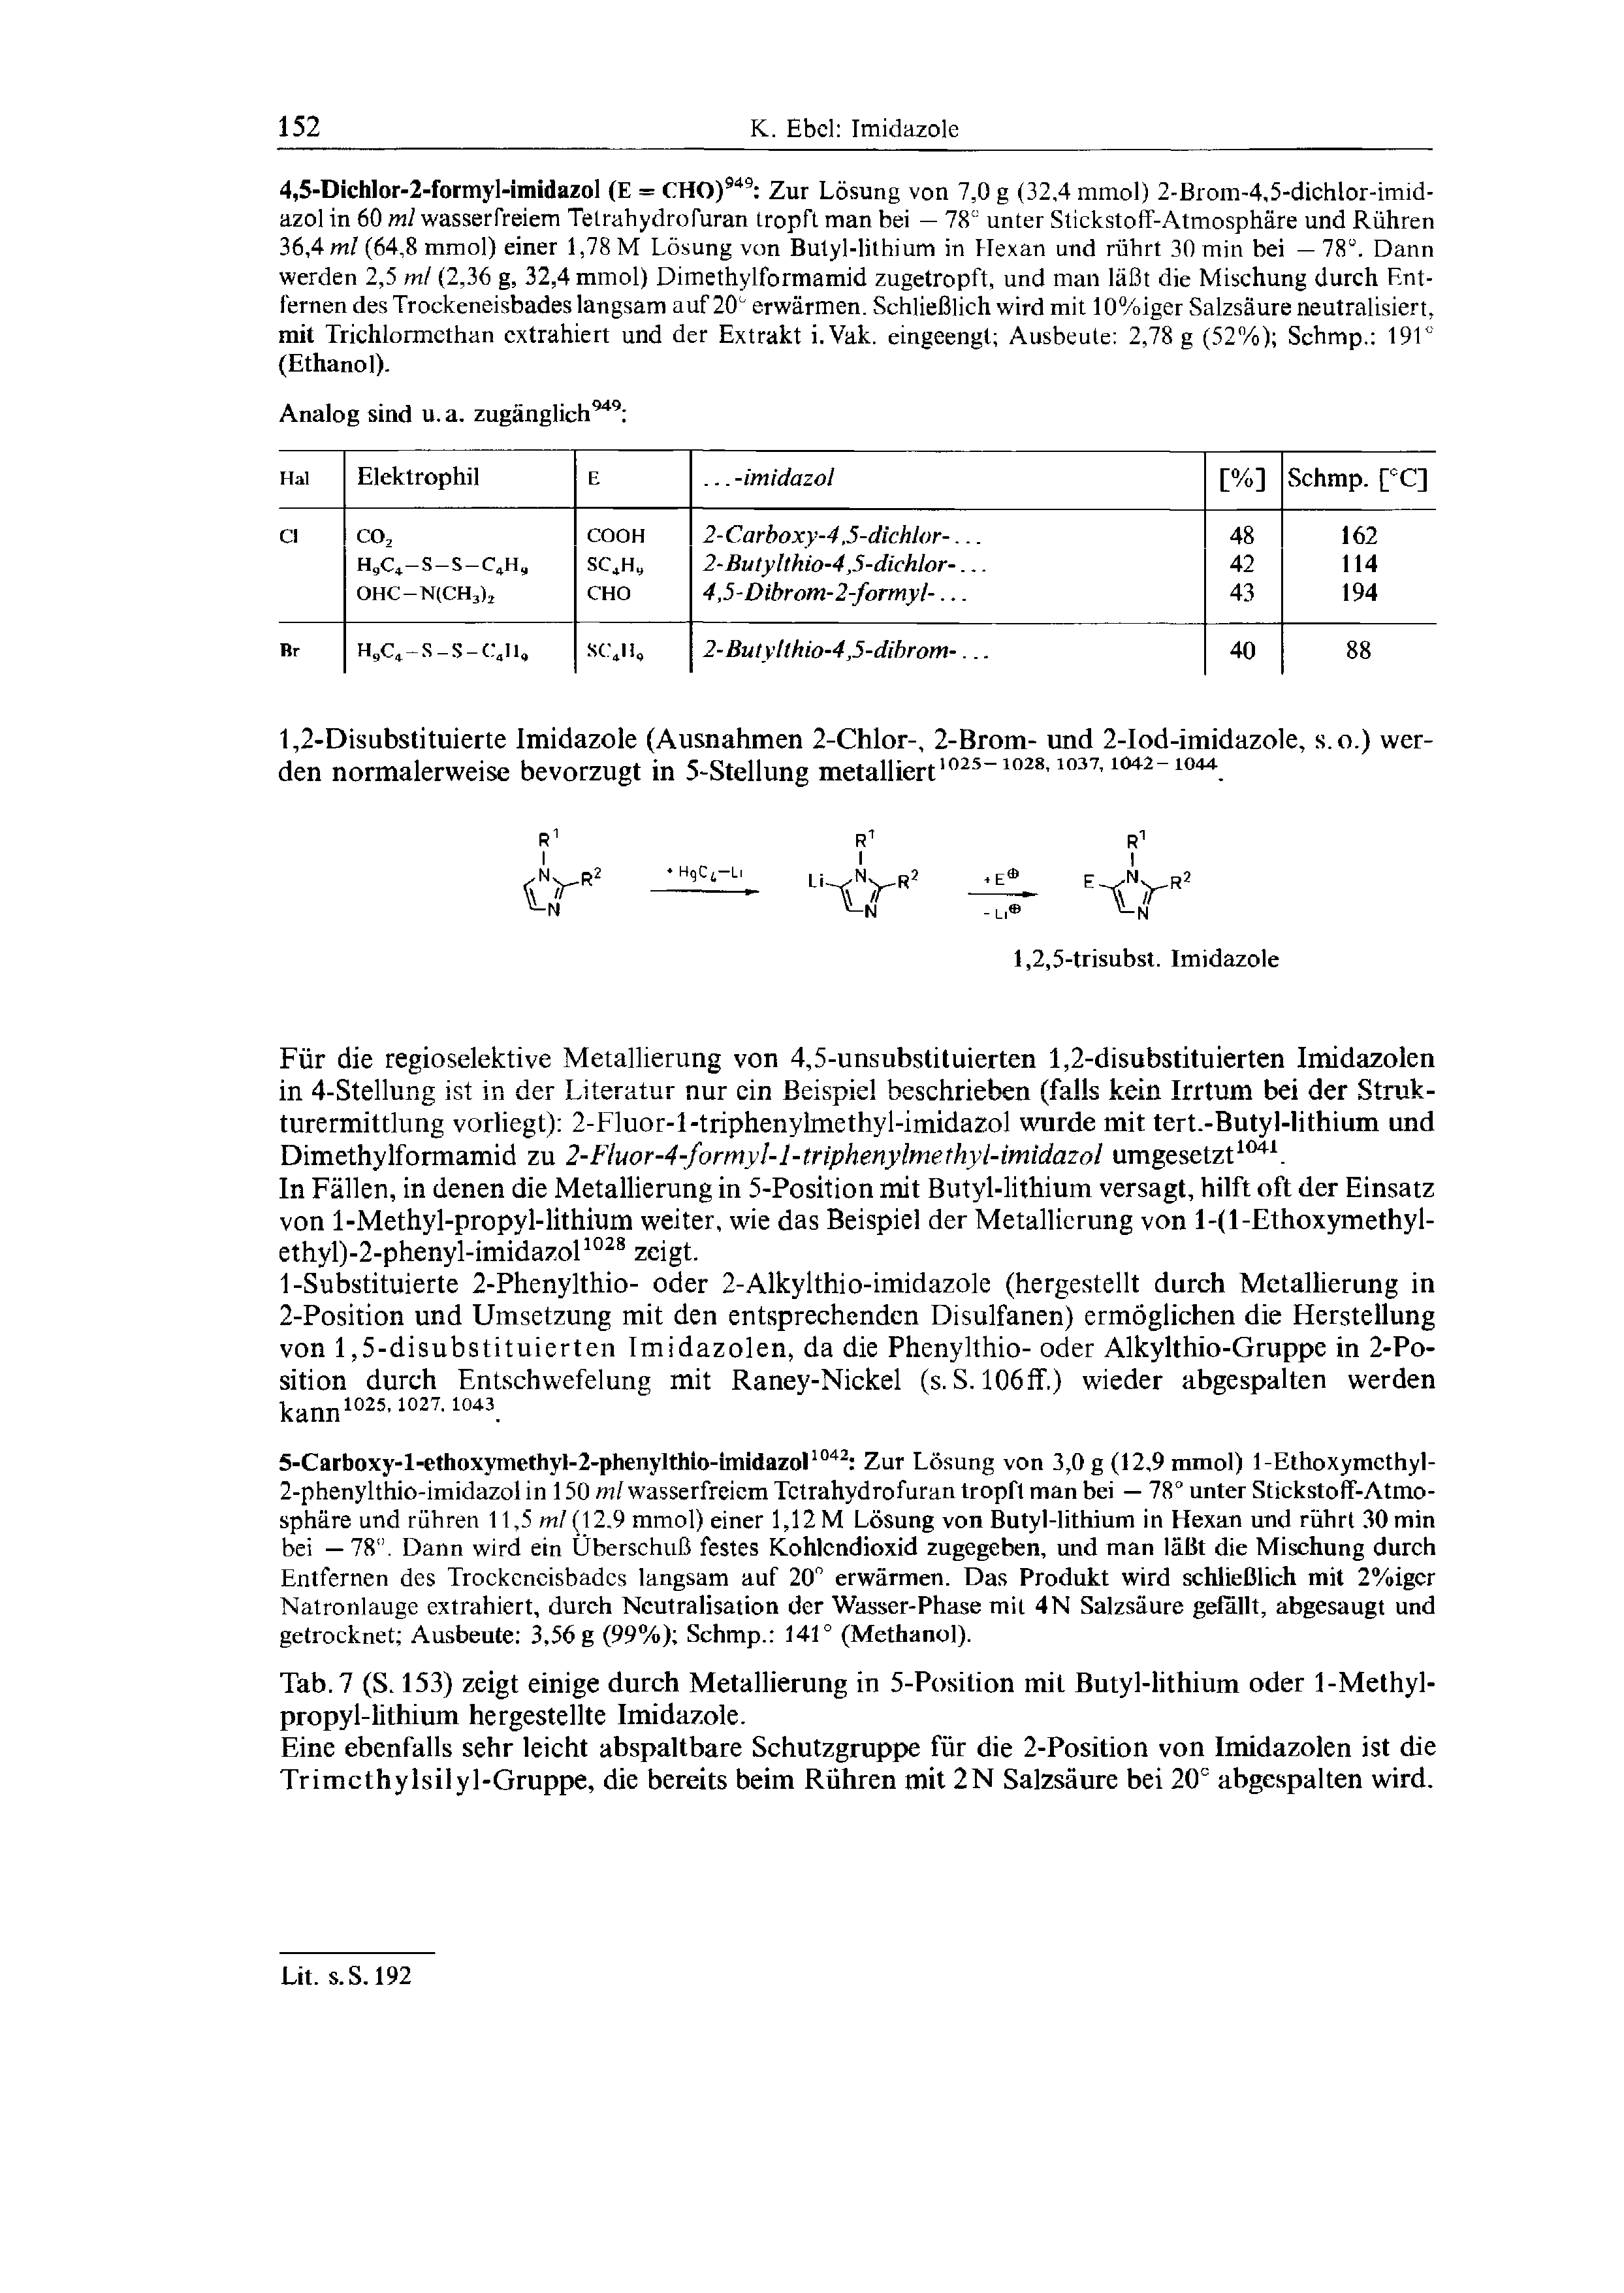 Tab. 7 (S. 153) zeigt einige durch Metallierung in 5-Position mit Butyl-lithium oder 1-Methyl-propyl-lithium hergestellte Imidazole.